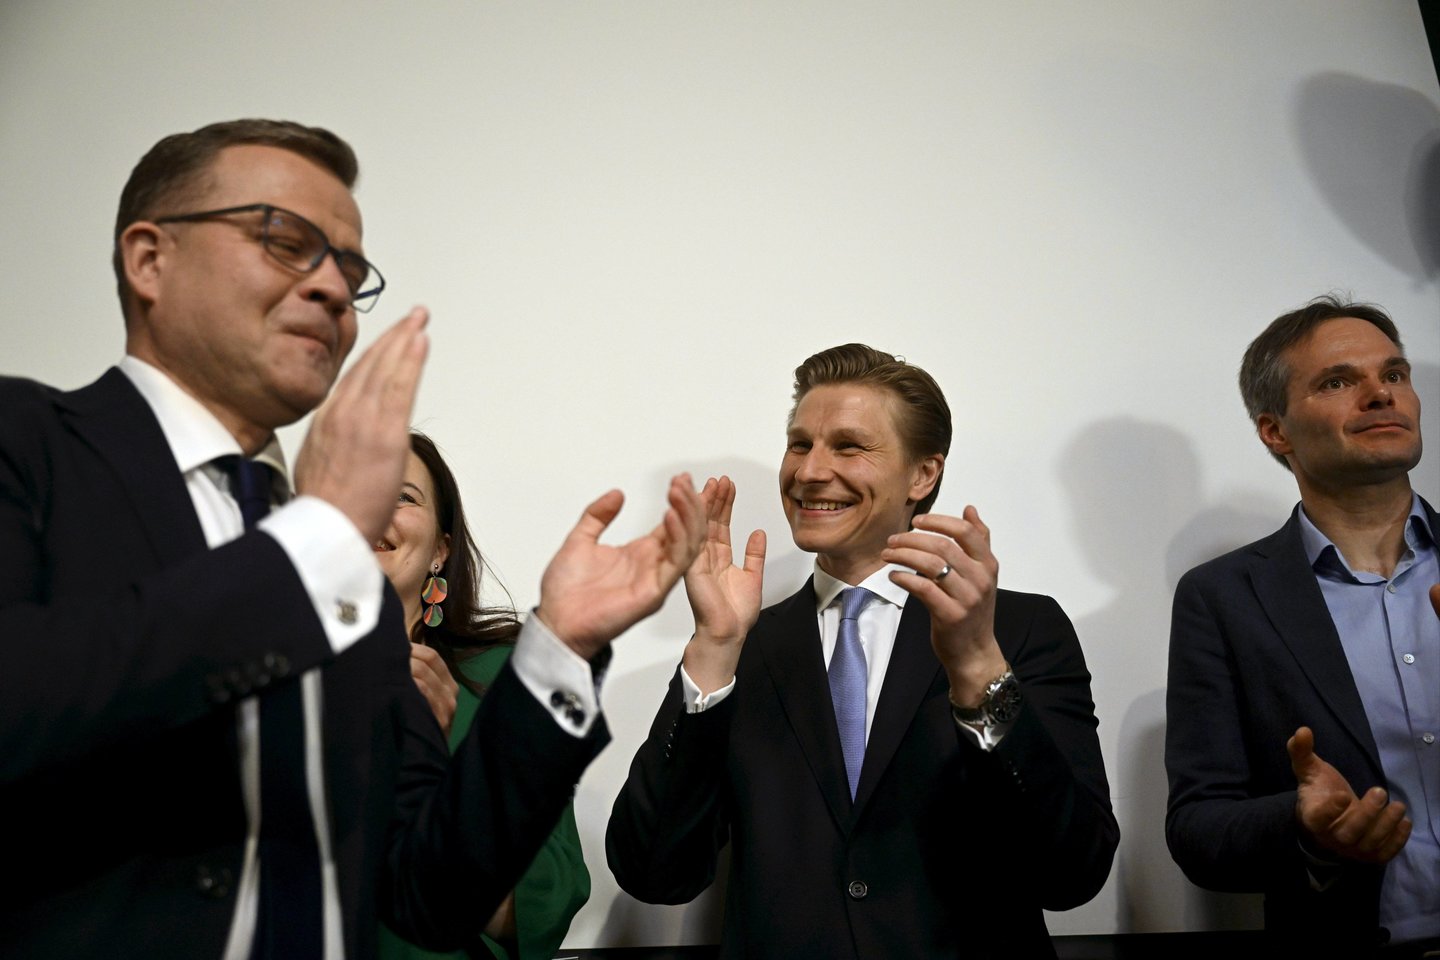 ​Suomijos parlamento rinkimus laimėjo centro dešiniosios Nacionalinės koalicijos partijos lyderis Petteris Orpo, įveikęs ministrės pirmininkės Sannos Marin centro kairiųjų partiją.<br>IMAGO/Scanpix nuotr.